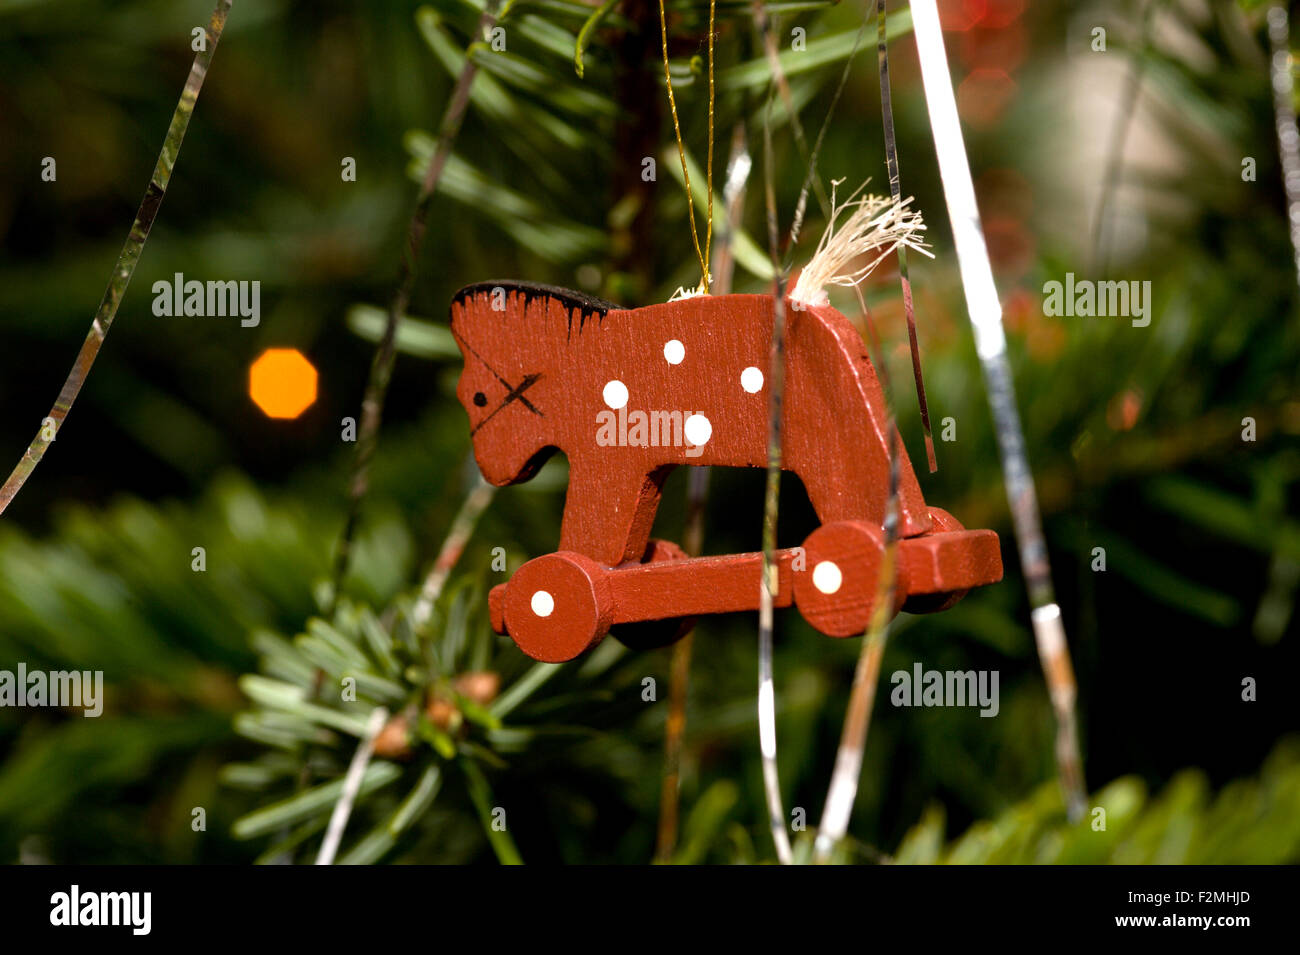 Cerca de un pequeño caballo con ruedas de madera de estilo de decoración del árbol de navidad Foto de stock